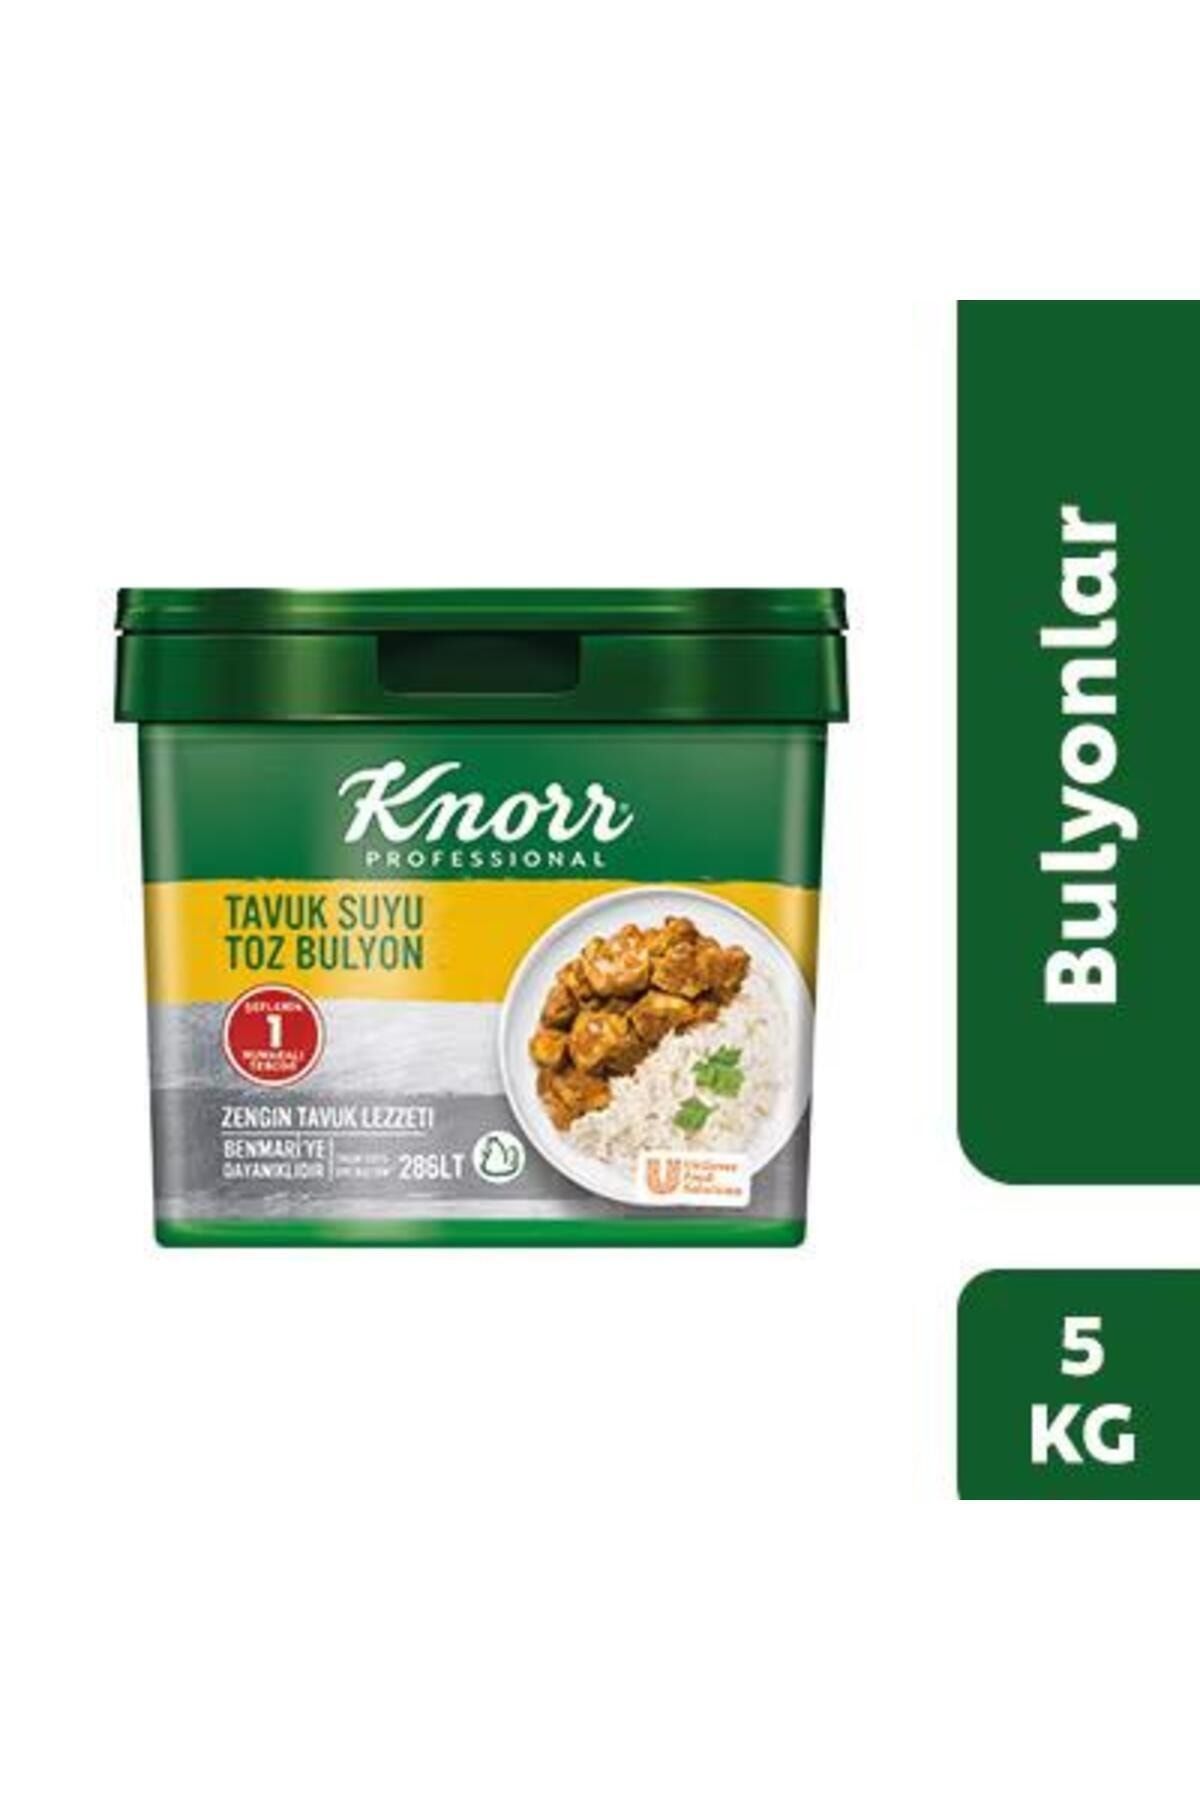 Knorr TAVUK SUYU BULYON 5KG